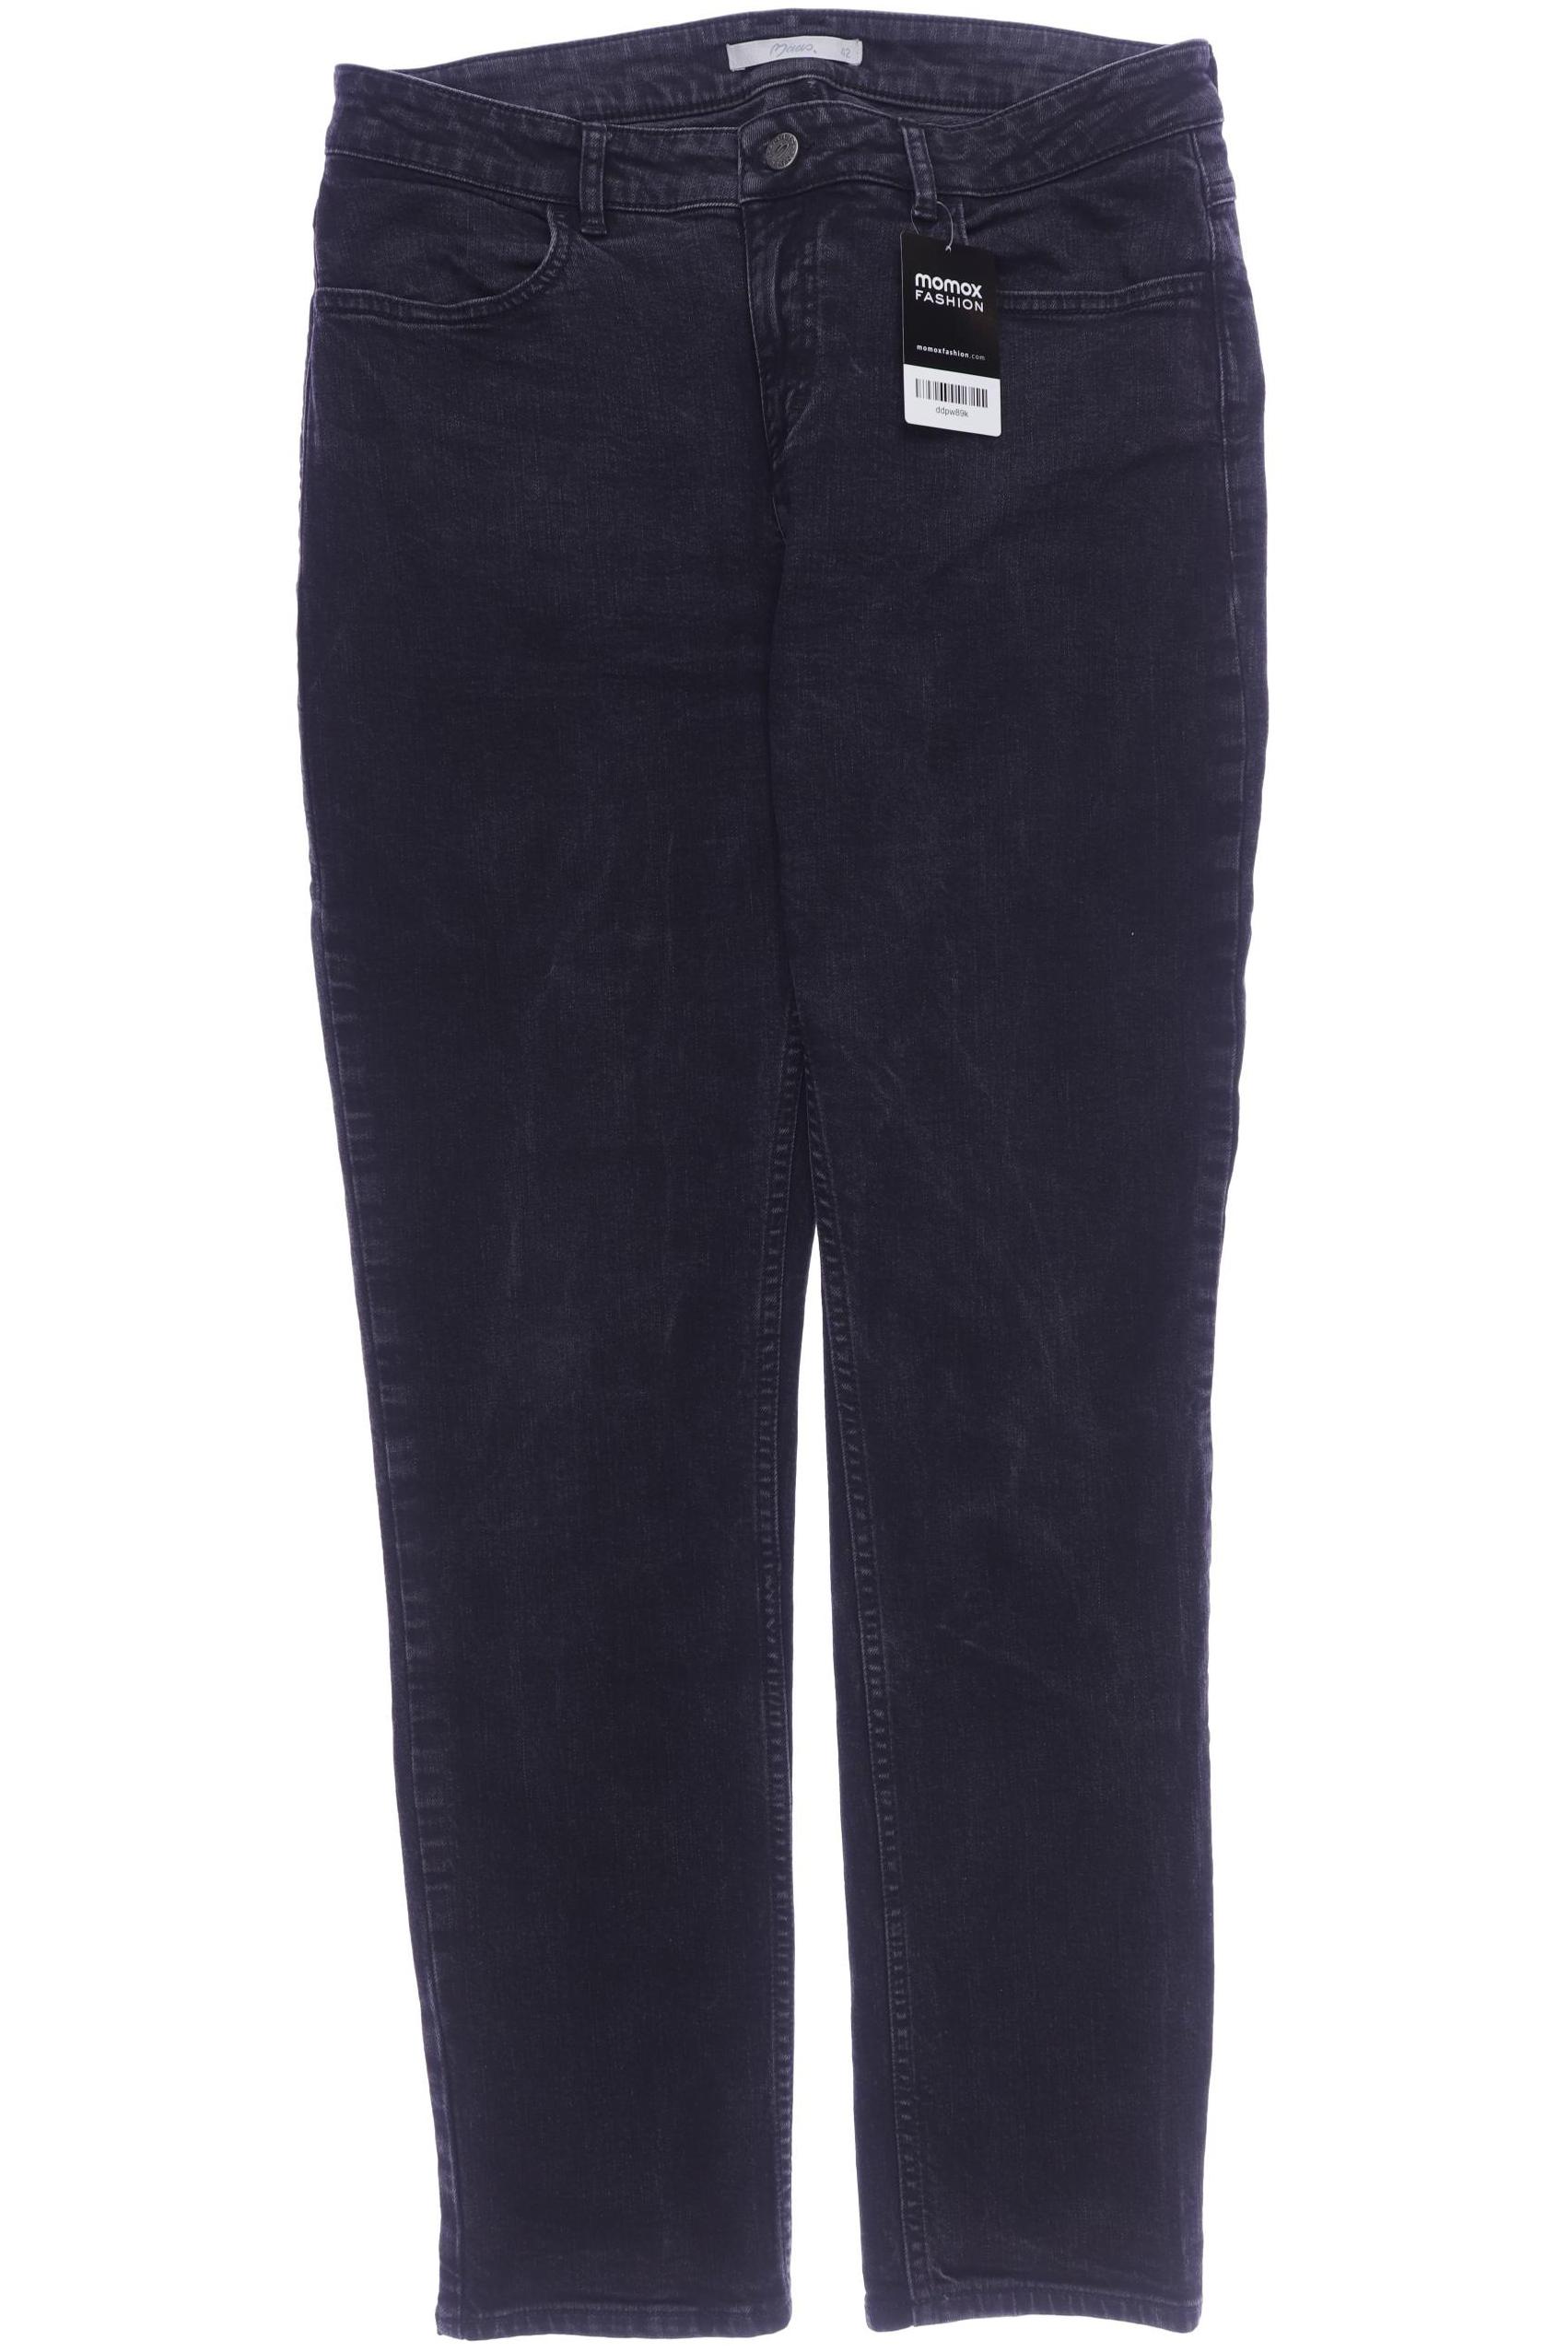 Maas Damen Jeans, schwarz, Gr. 42 von Maas